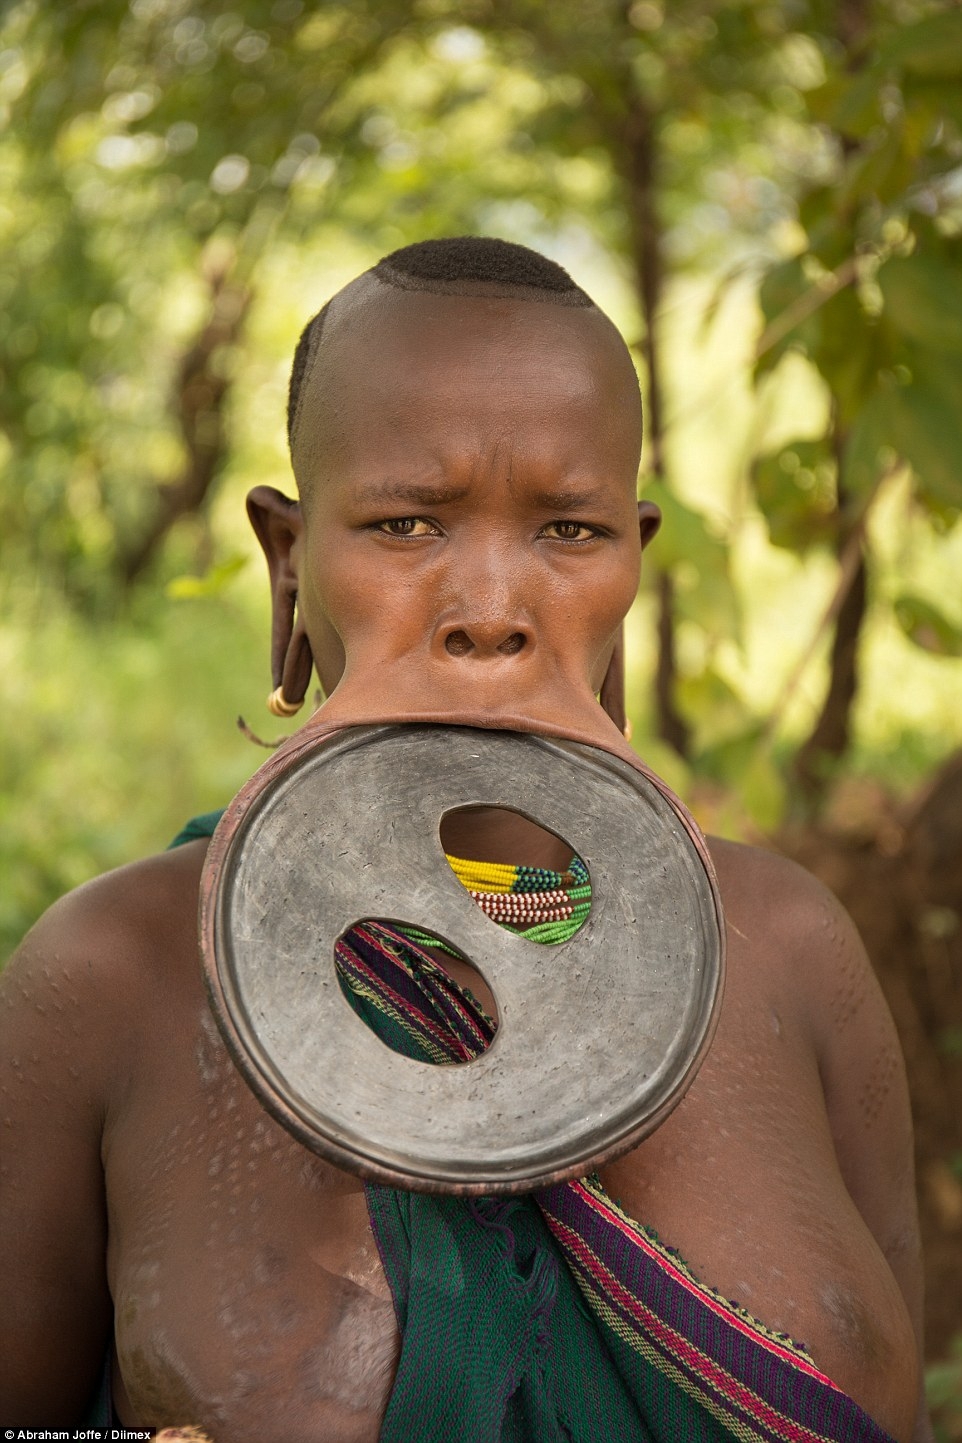 Обладательница самого большого диска для губ из Эфиопии